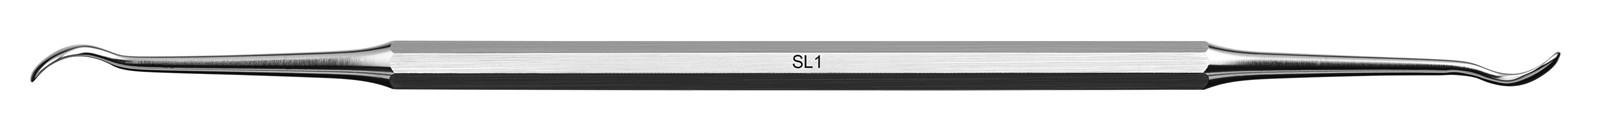 Instrument pro sinus lift - SL1, ADEP žlutý